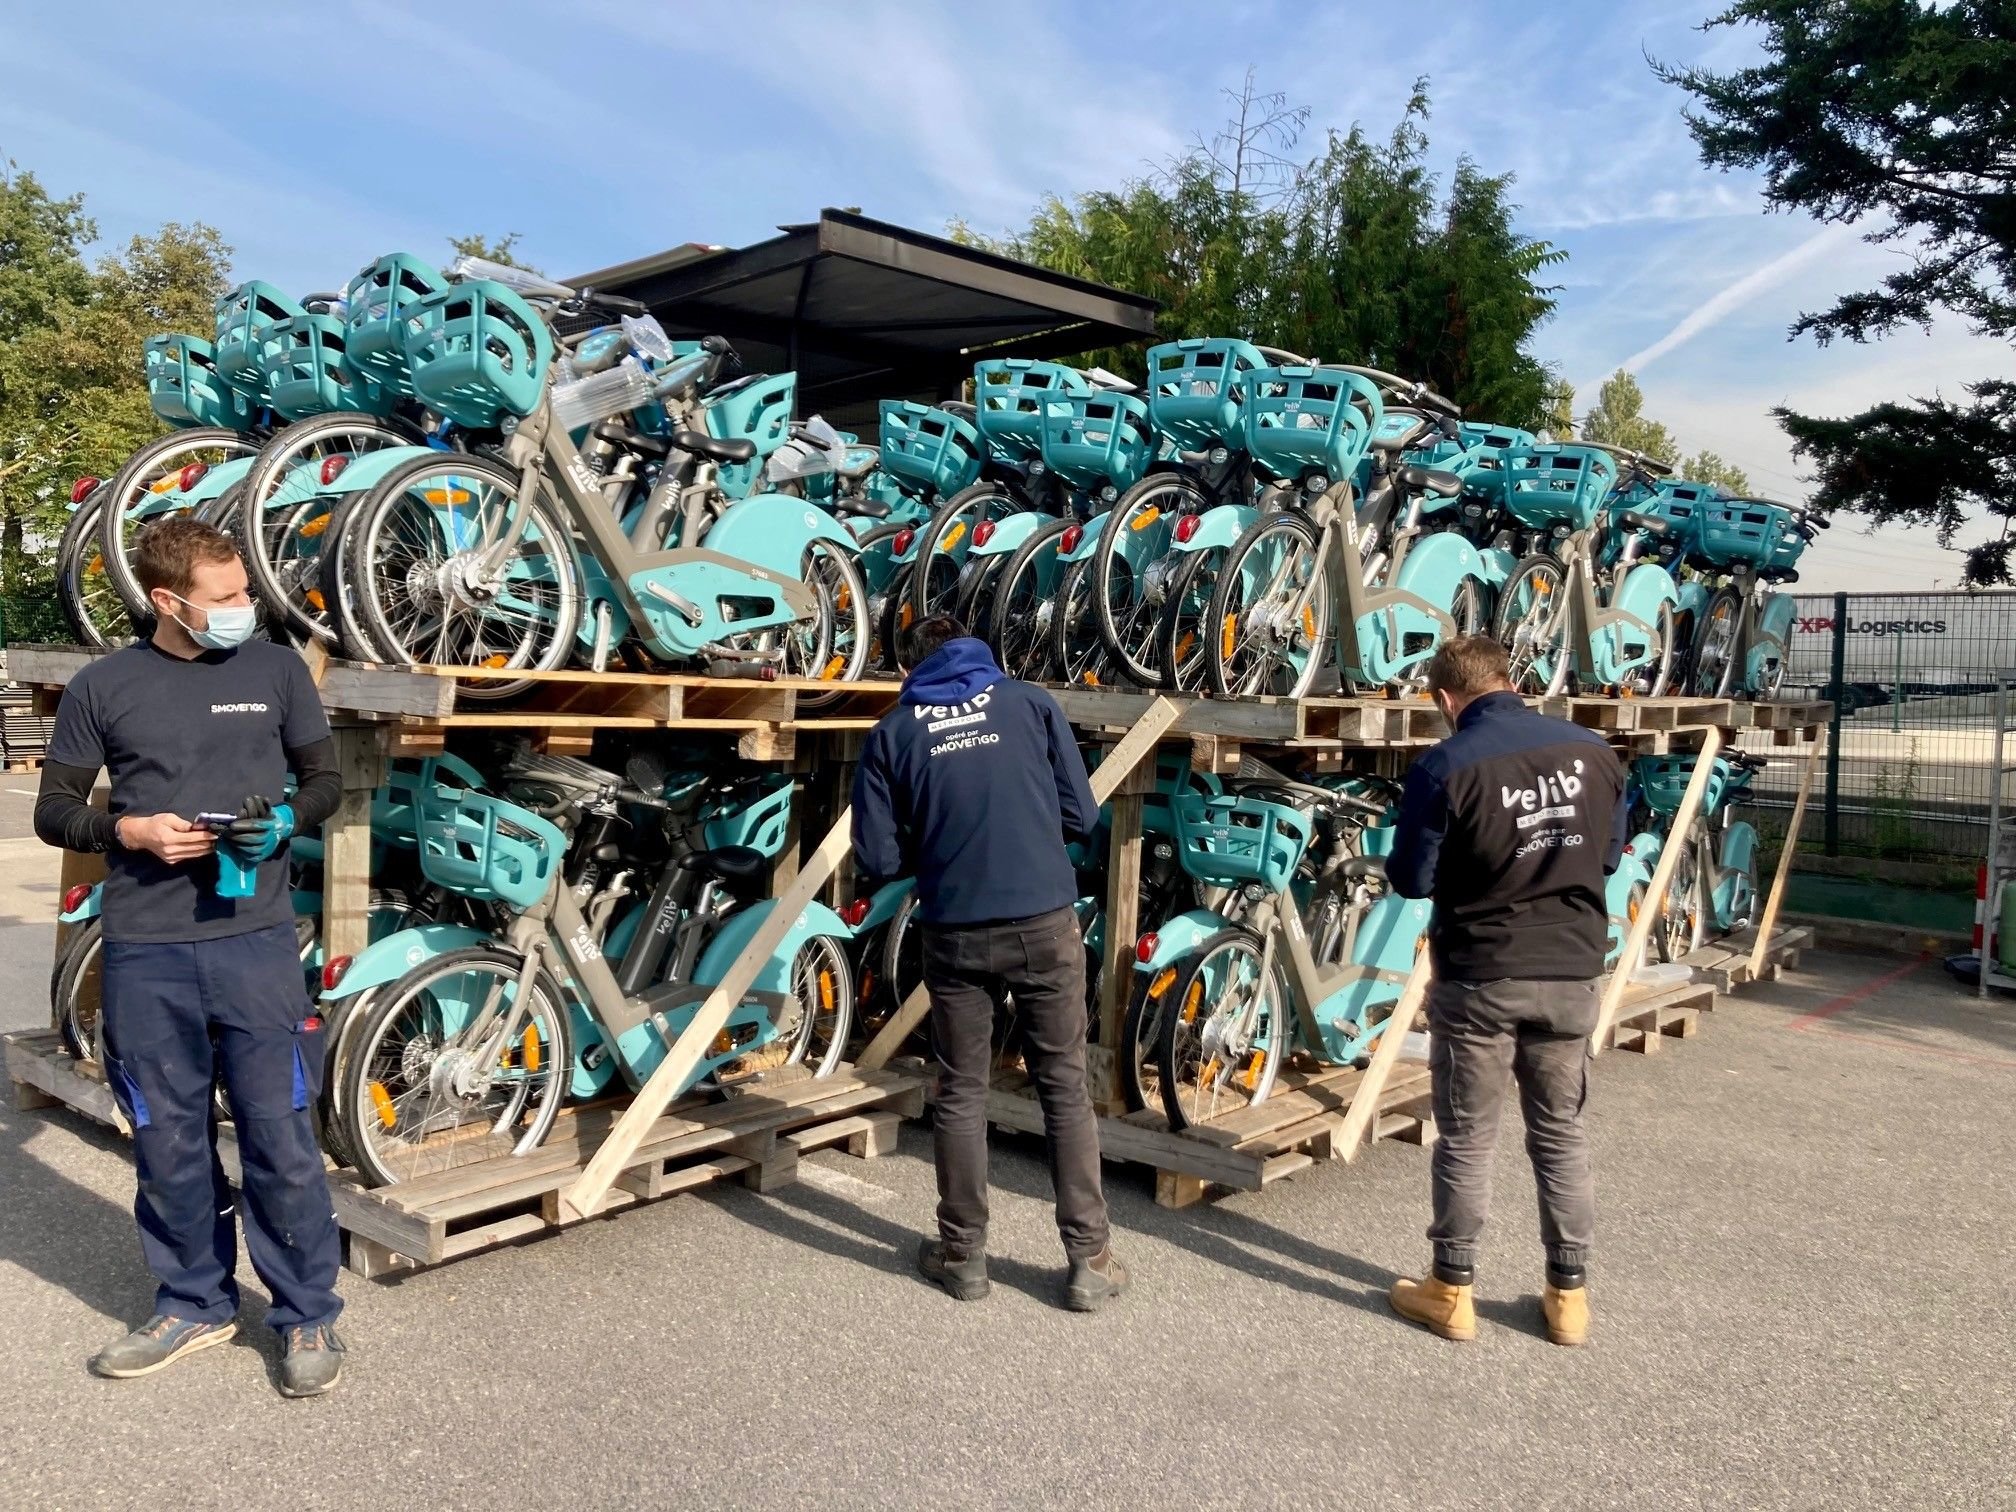 Ateliers de Smovengo à Alfortville (Val de Marne). Les Vélib de couleur bleue, à assistance électrique, sont surutilisés et nécessitent de gros efforts de maintenance. (Illustration) DR